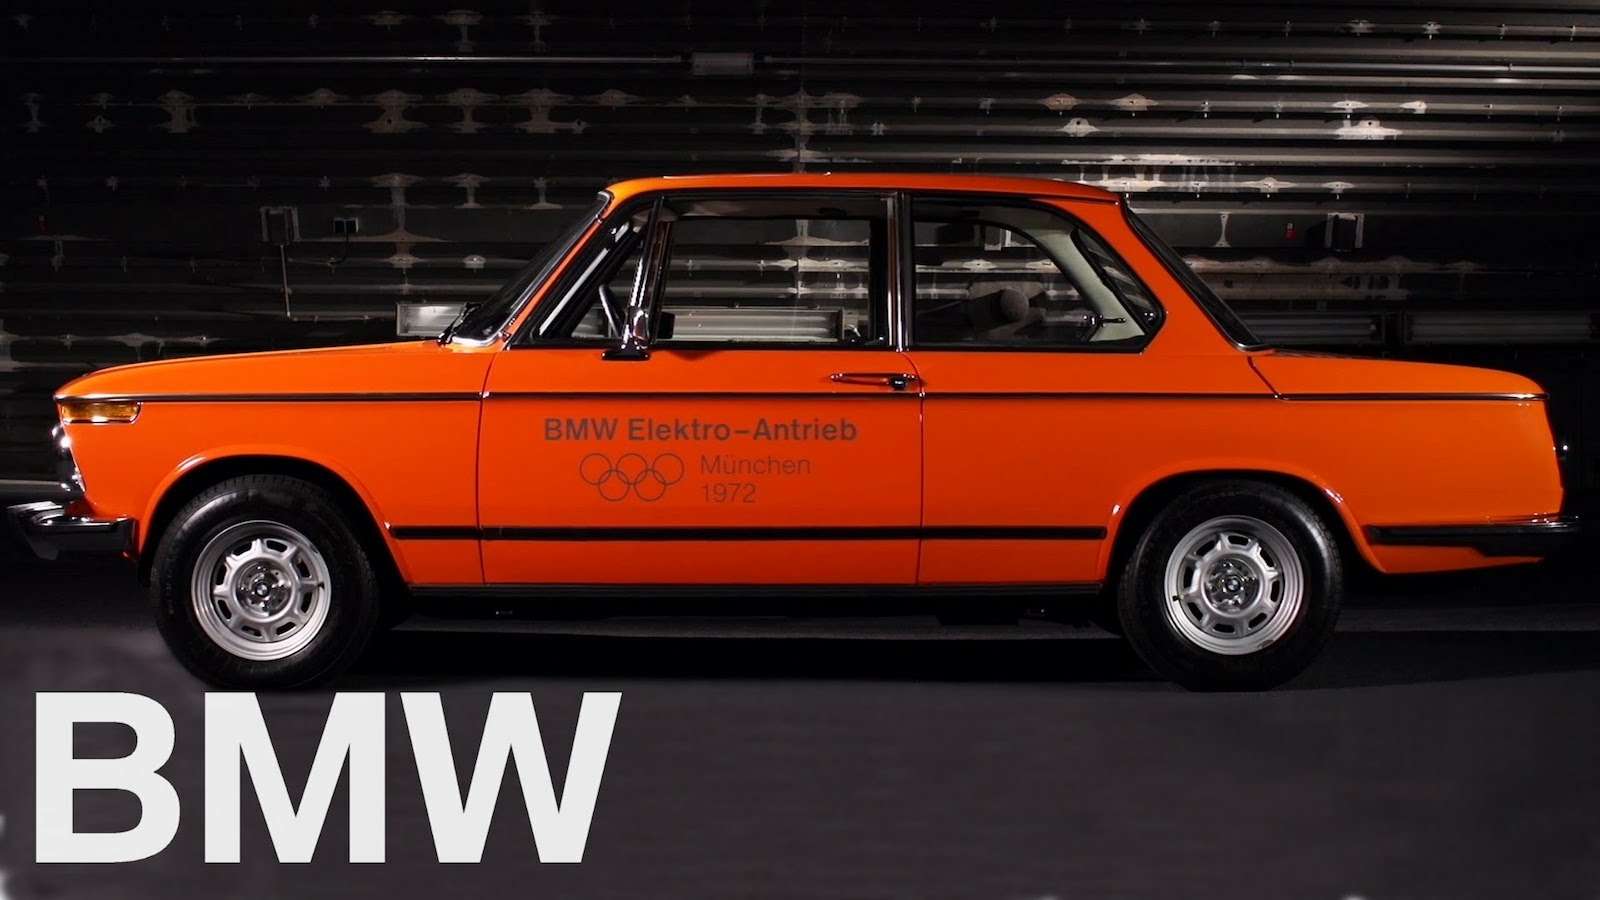 Для Мюнхенского марафона 1972 года компанией BMW был специально разработан электрокар. С тех пор изыскания немцев на электрическую тему продолжались, но рынку было не до машин на альтернативной тяге. Поэтому i-серия появилась лишь в 2012-м.